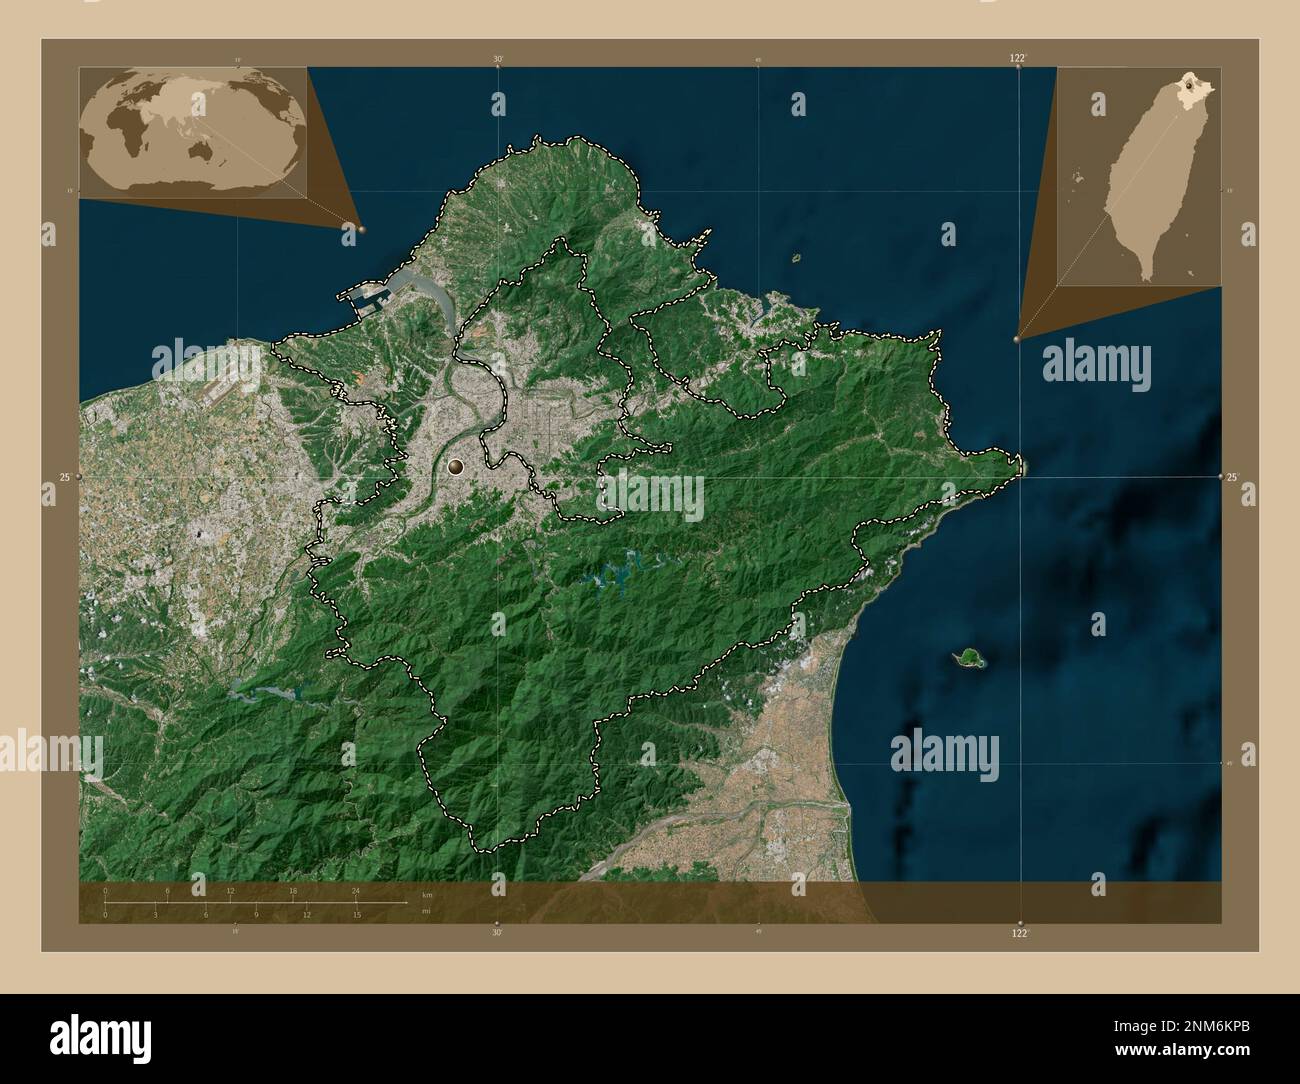 New Taipei City, Sondergemeinde Taiwan. Satellitenkarte mit niedriger Auflösung. Eckkarten für zusätzliche Standorte Stockfoto